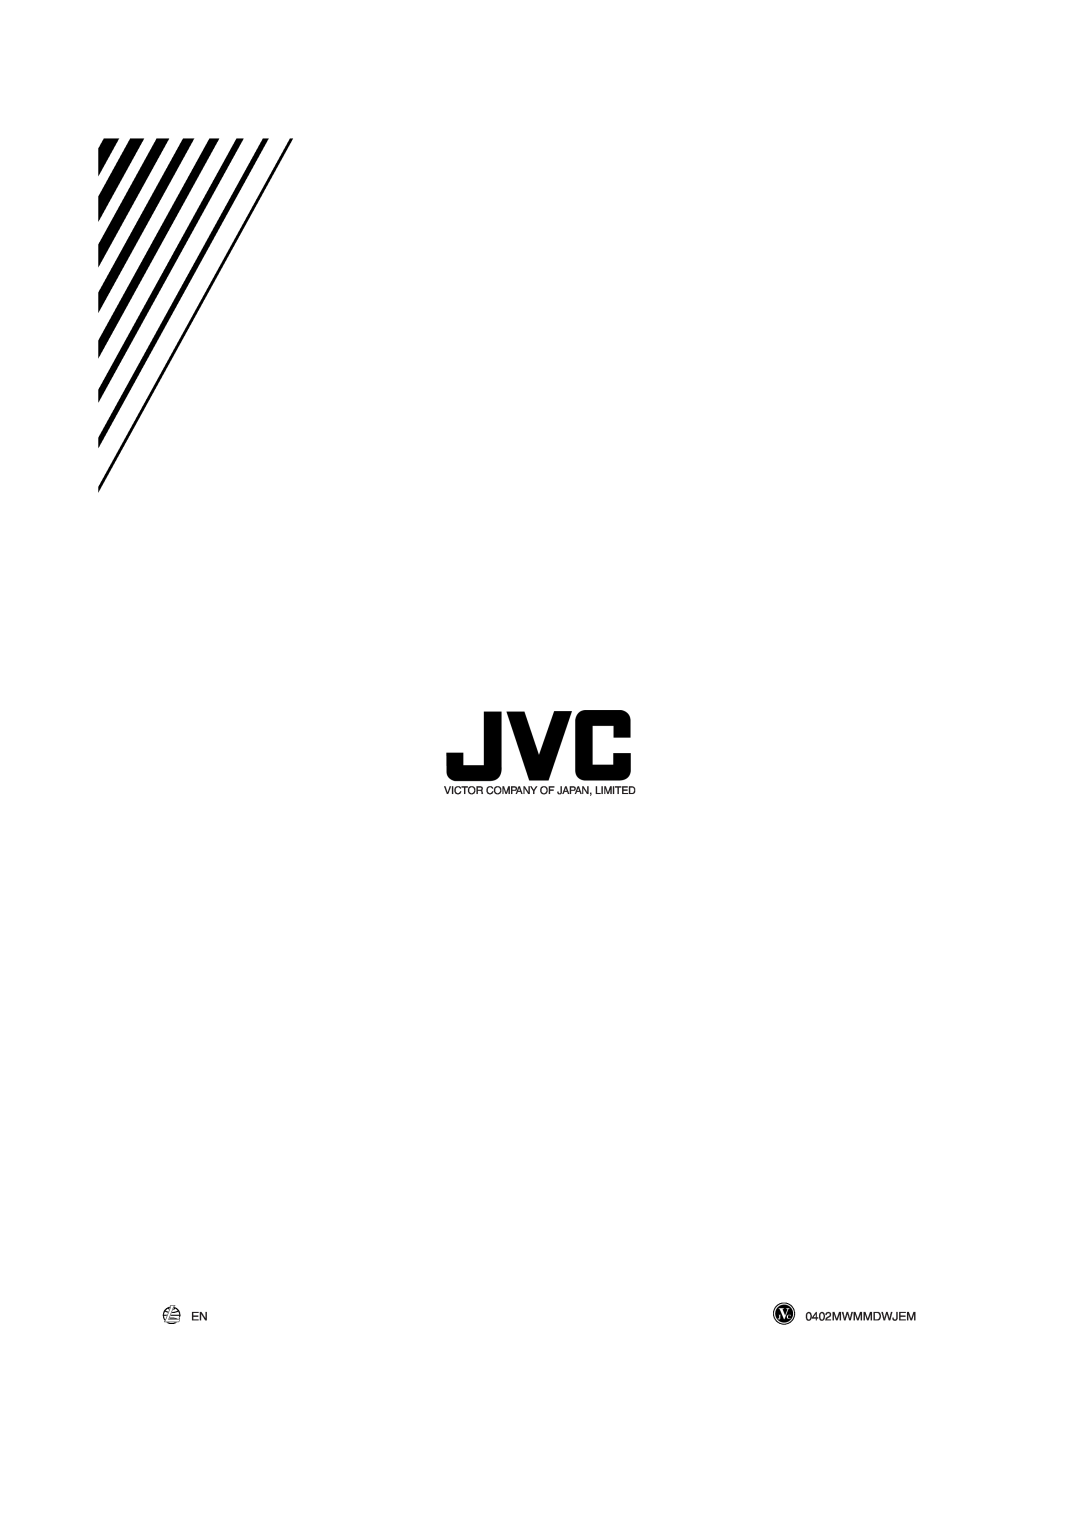 JVC UX-L30 manual 0402MWMMDWJEM, Victor Company Of Japan, Limited 